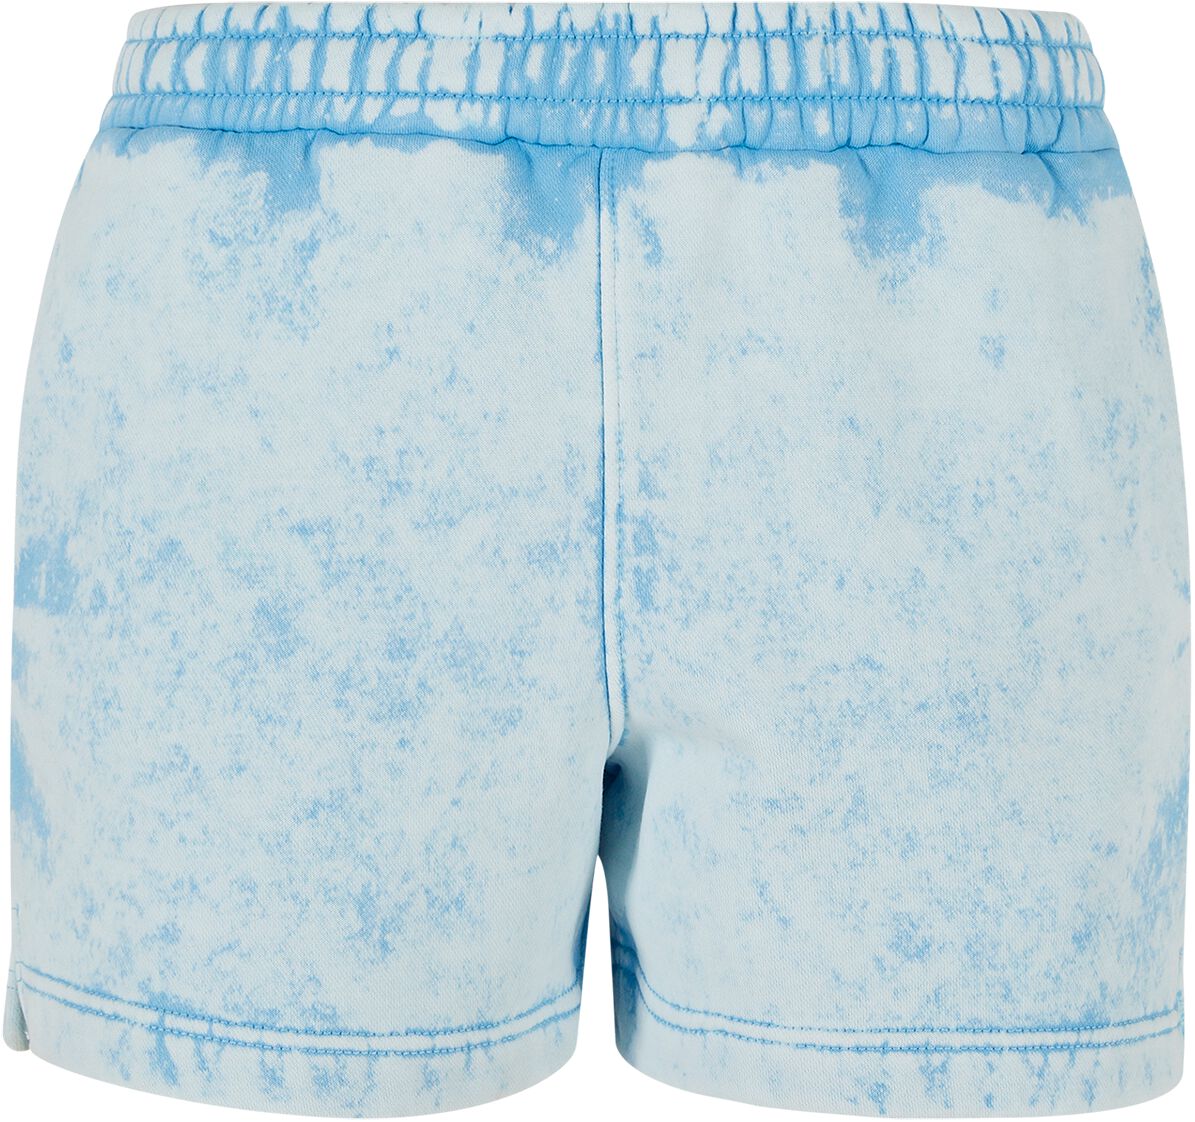 Urban Classics Short - Ladies Towel Washed Sweat Shorts - XS bis XL - für Damen - Größe S - blau